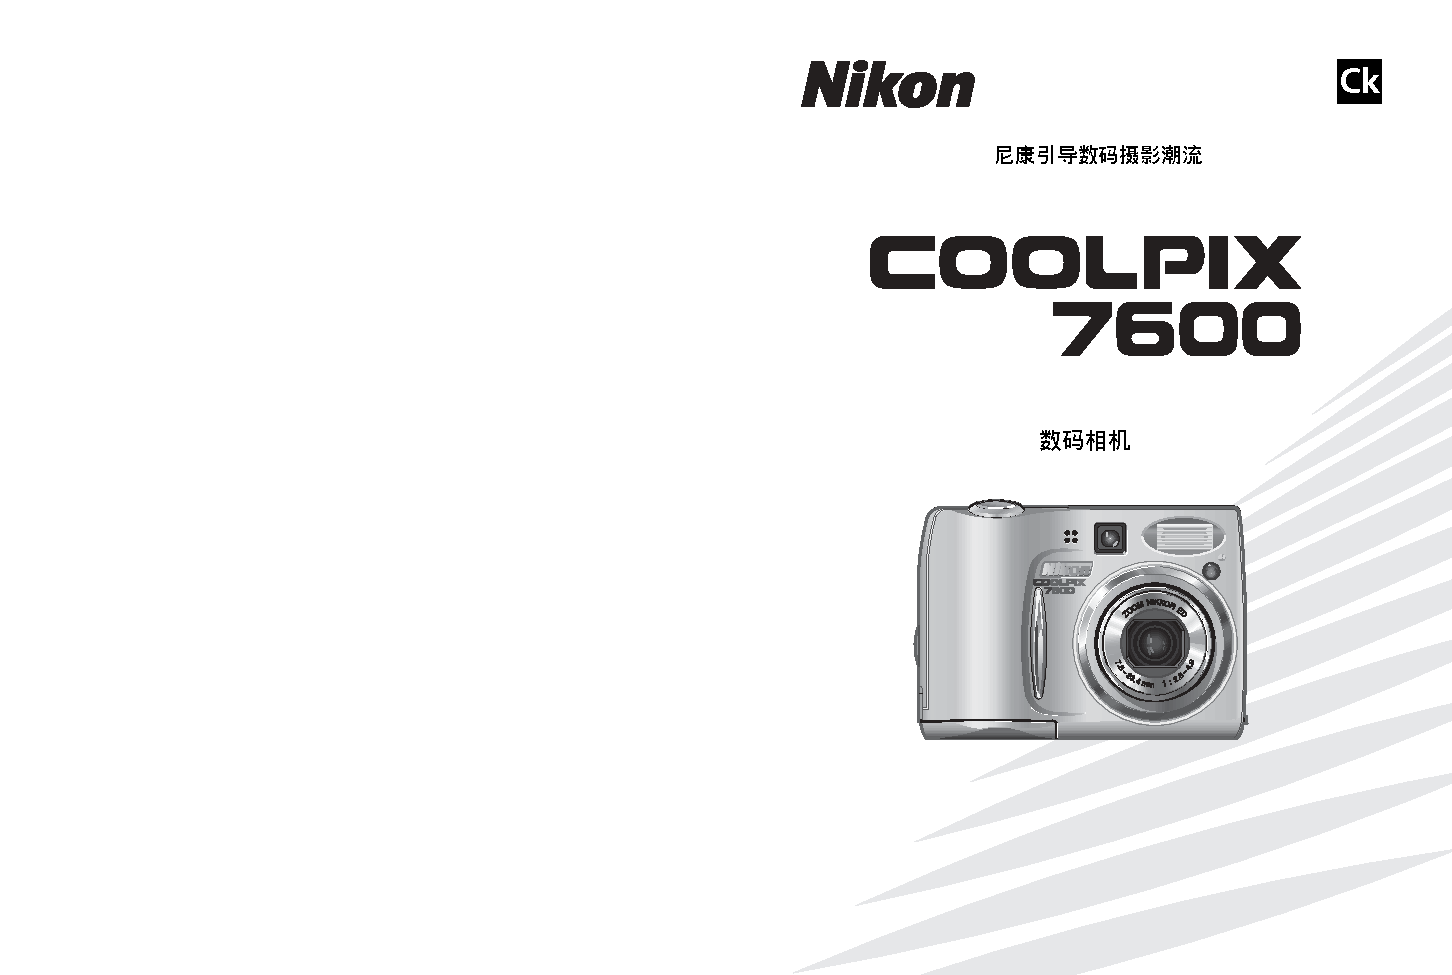 尼康 Nikon COOLPIX 7600 用户指南 封面